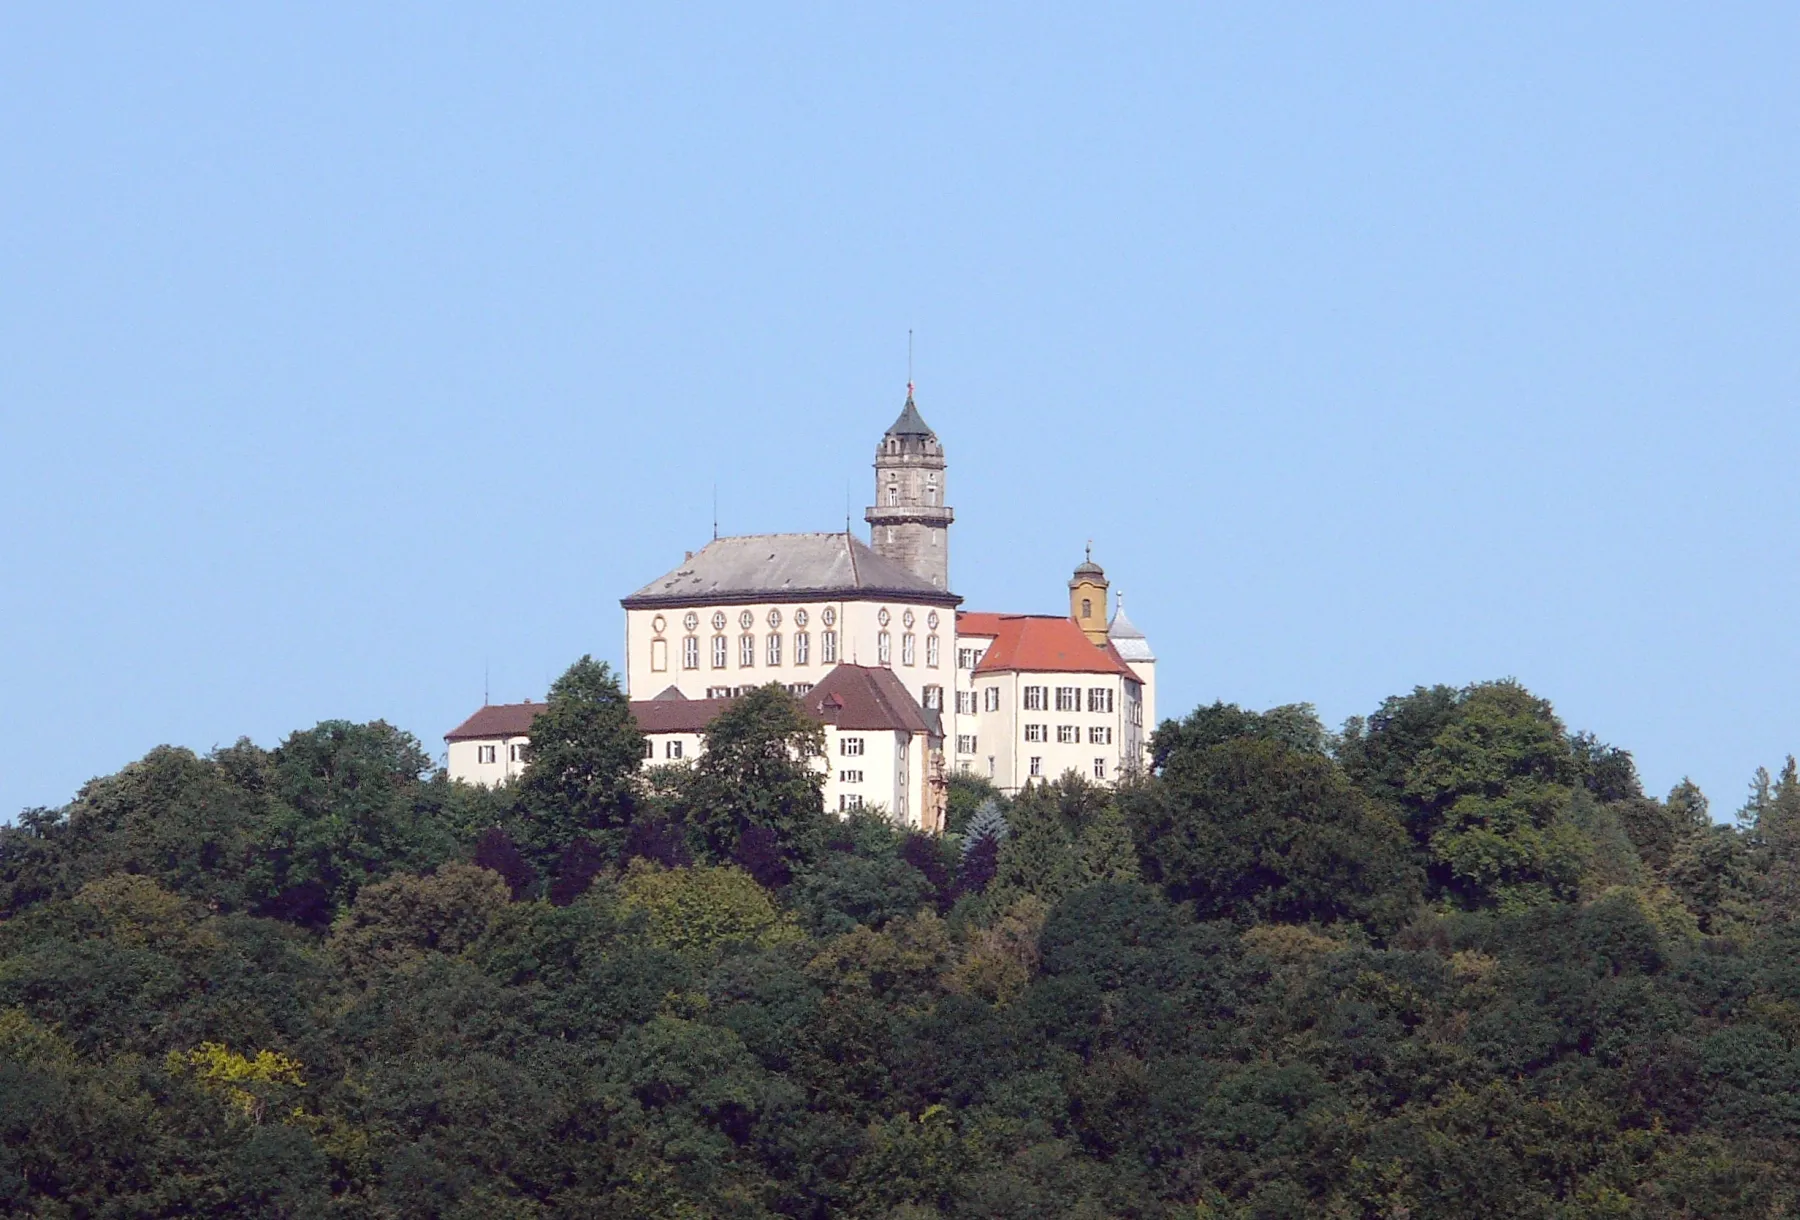 Photo showing: Castle of Baldern near Bopfingen, Germany